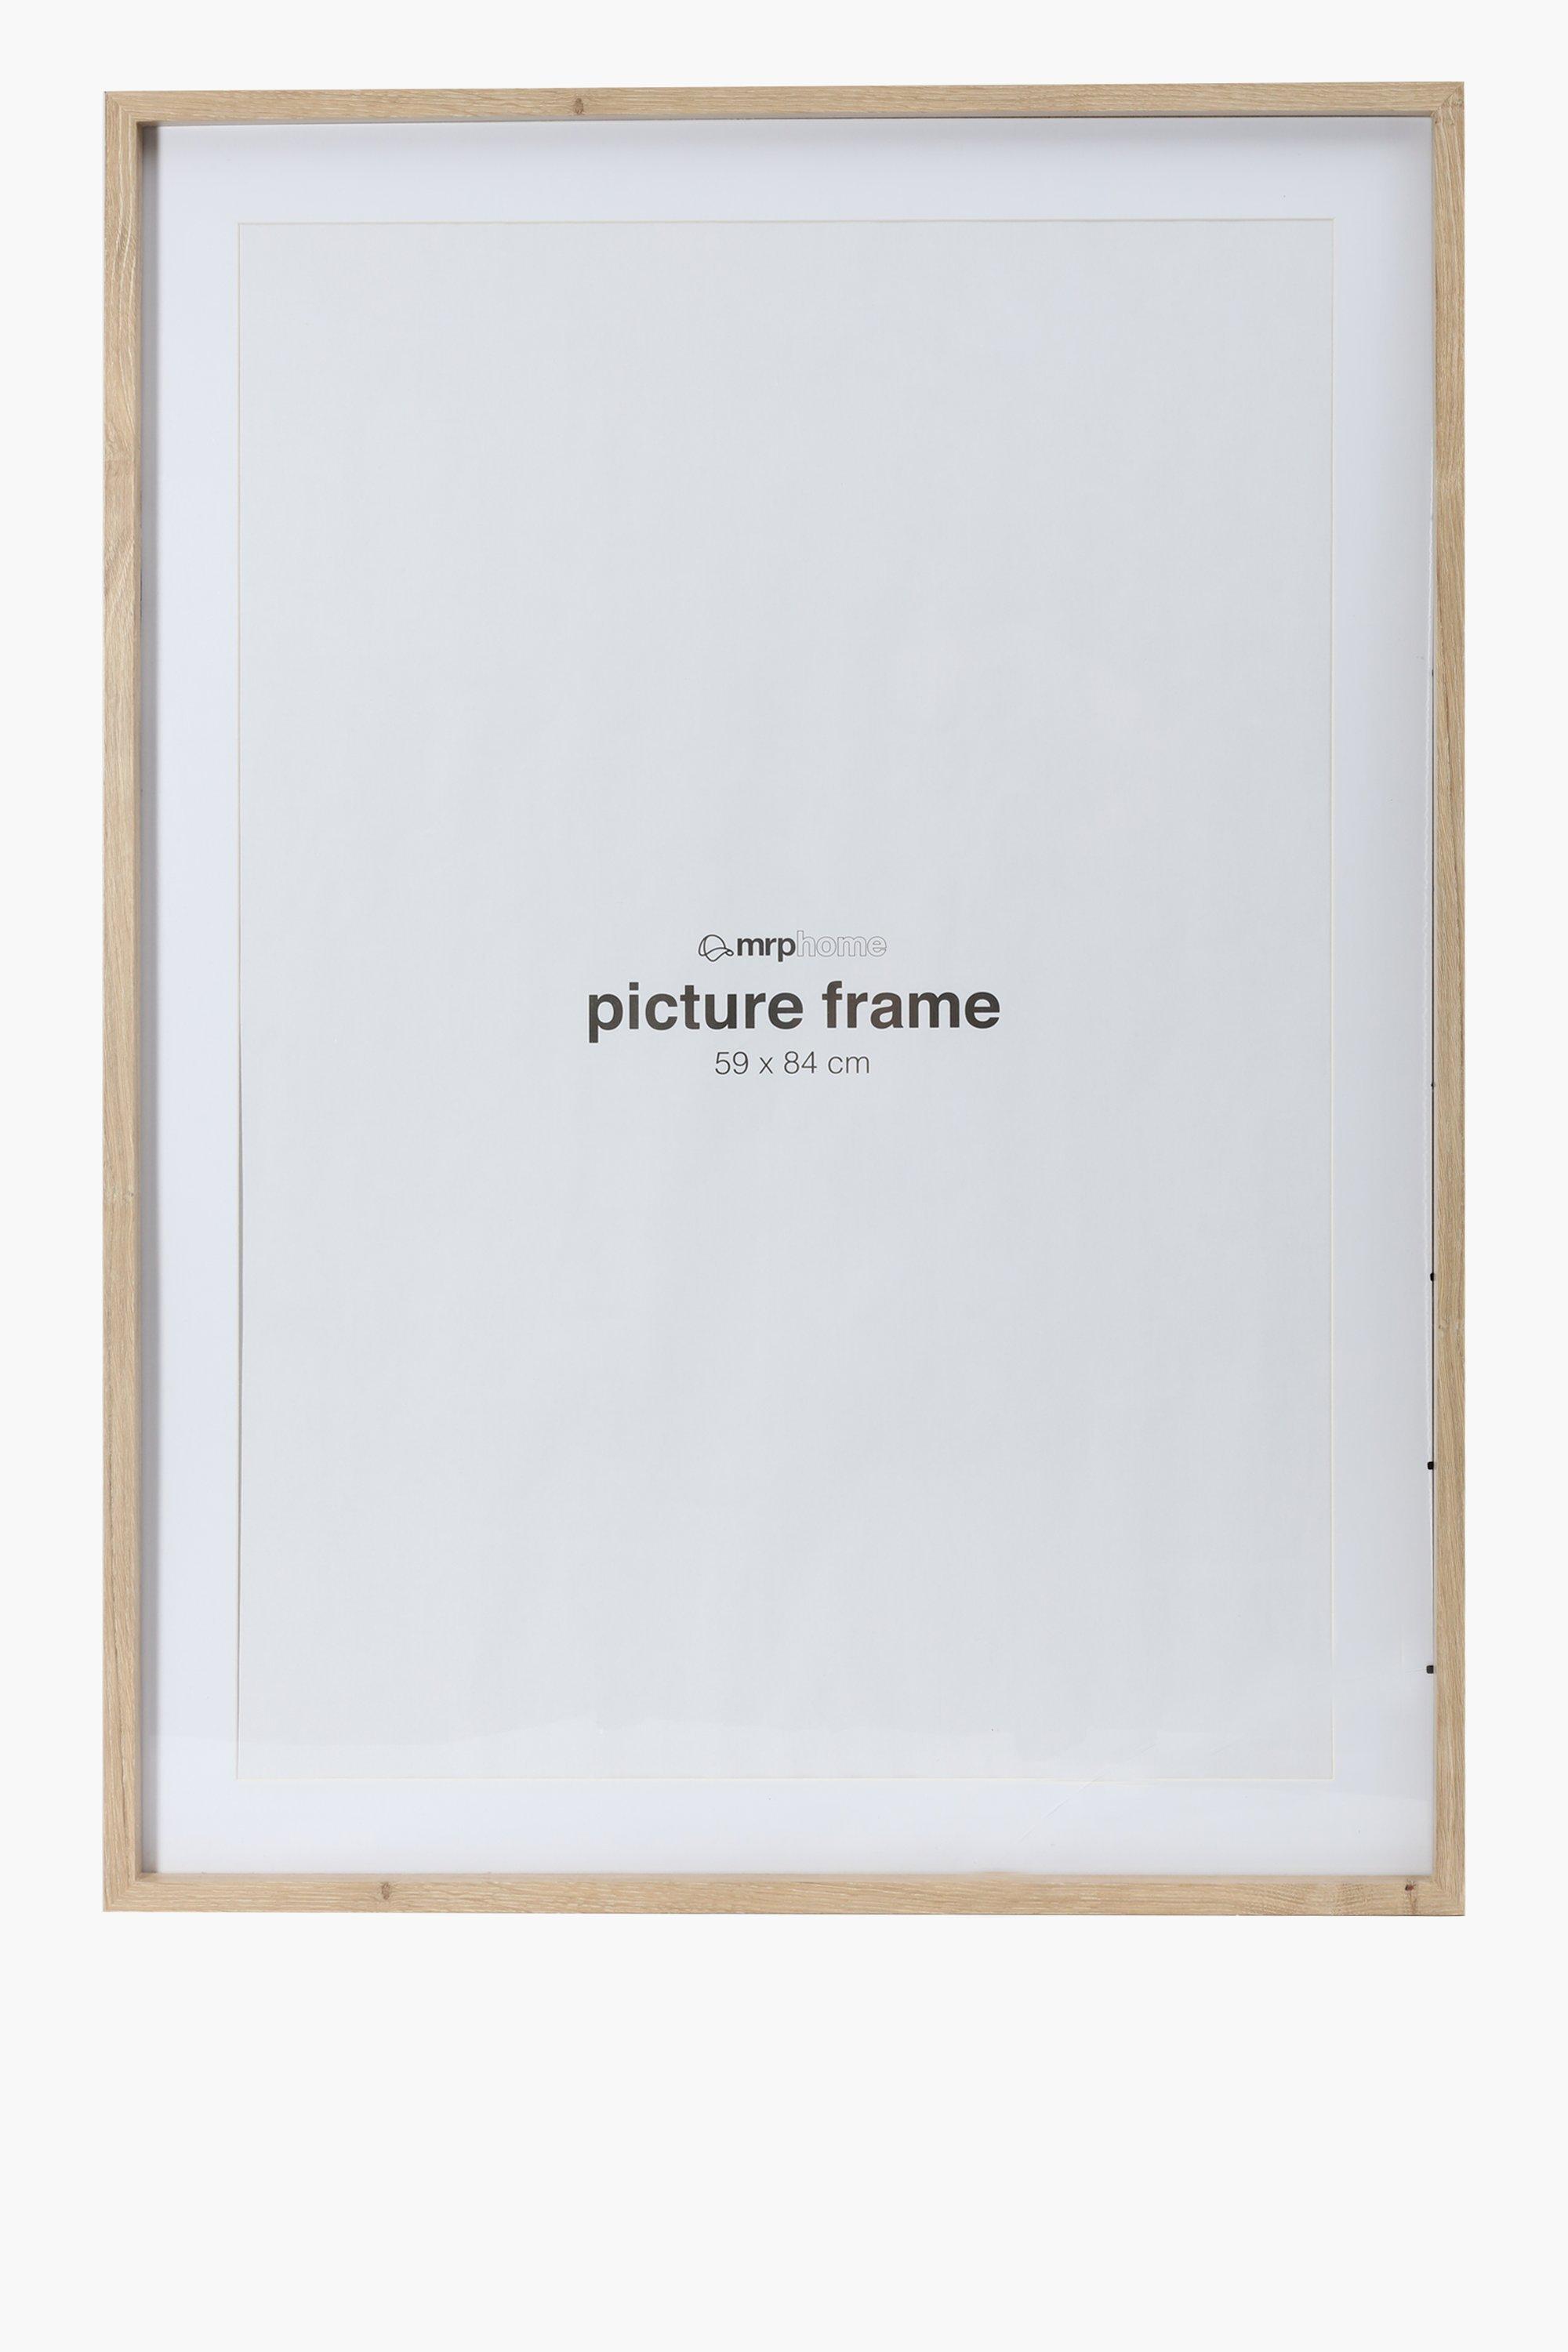 poster frames a1